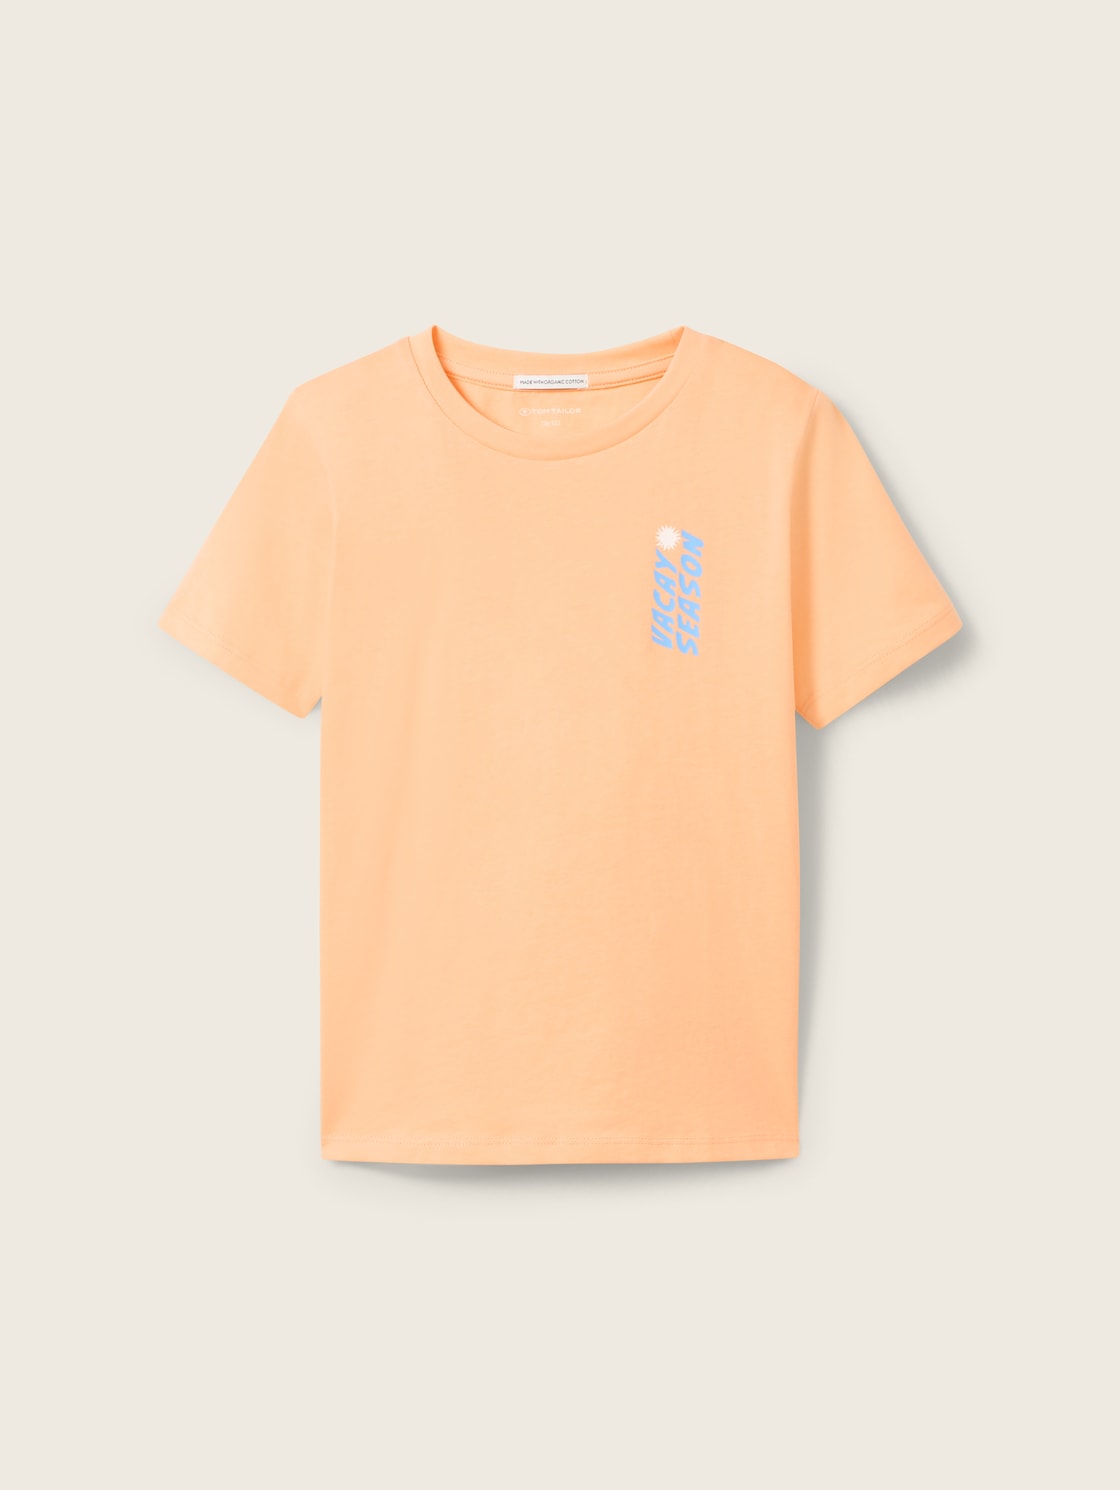 TOM TAILOR Jungen T-Shirt mit Special Print, orange, Print, Gr. 116/122 von Tom Tailor